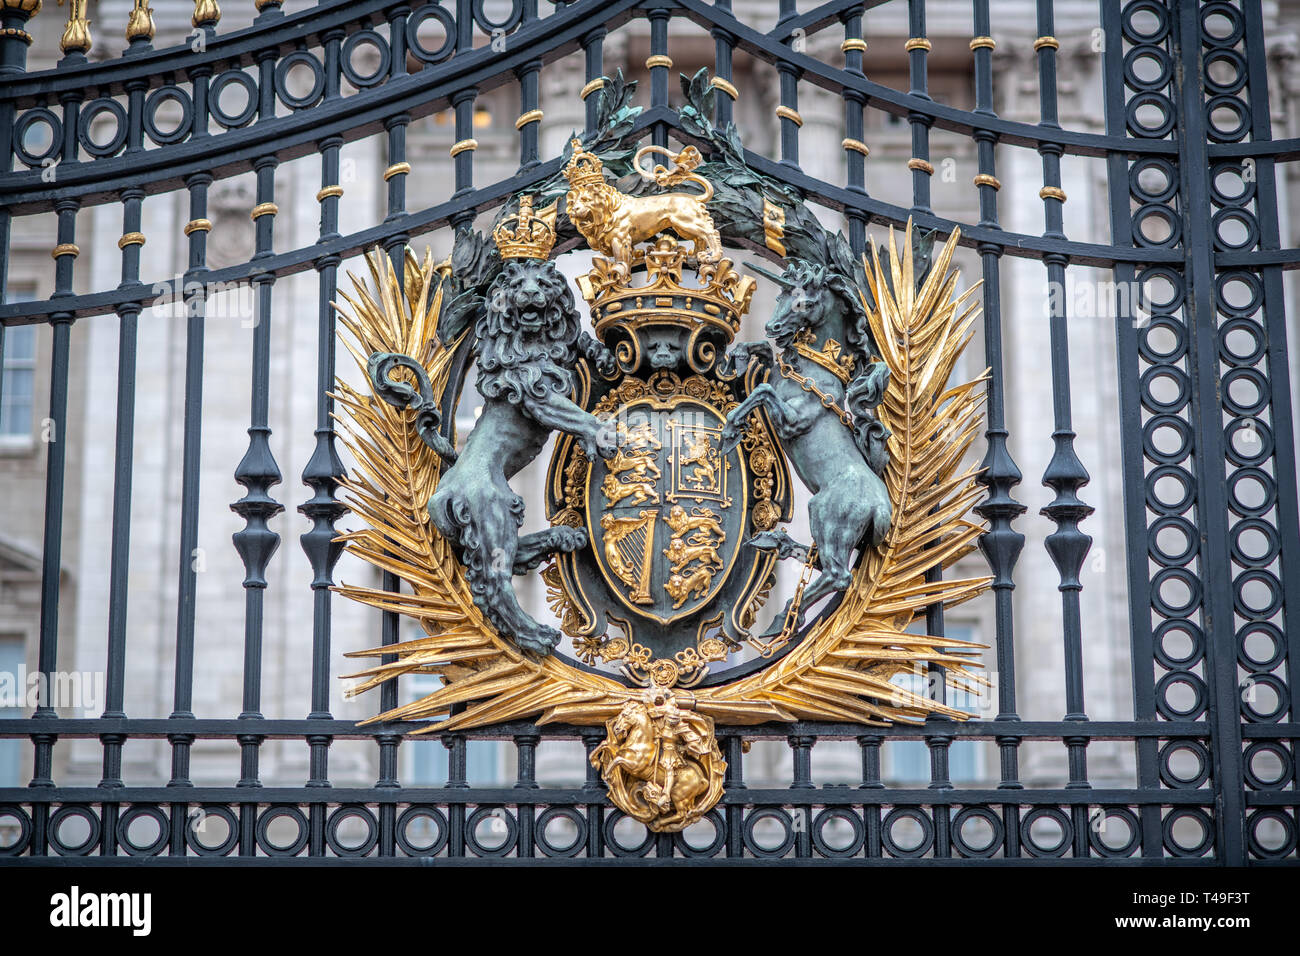 Gates of Buckingham palace - London, England Stock Photo